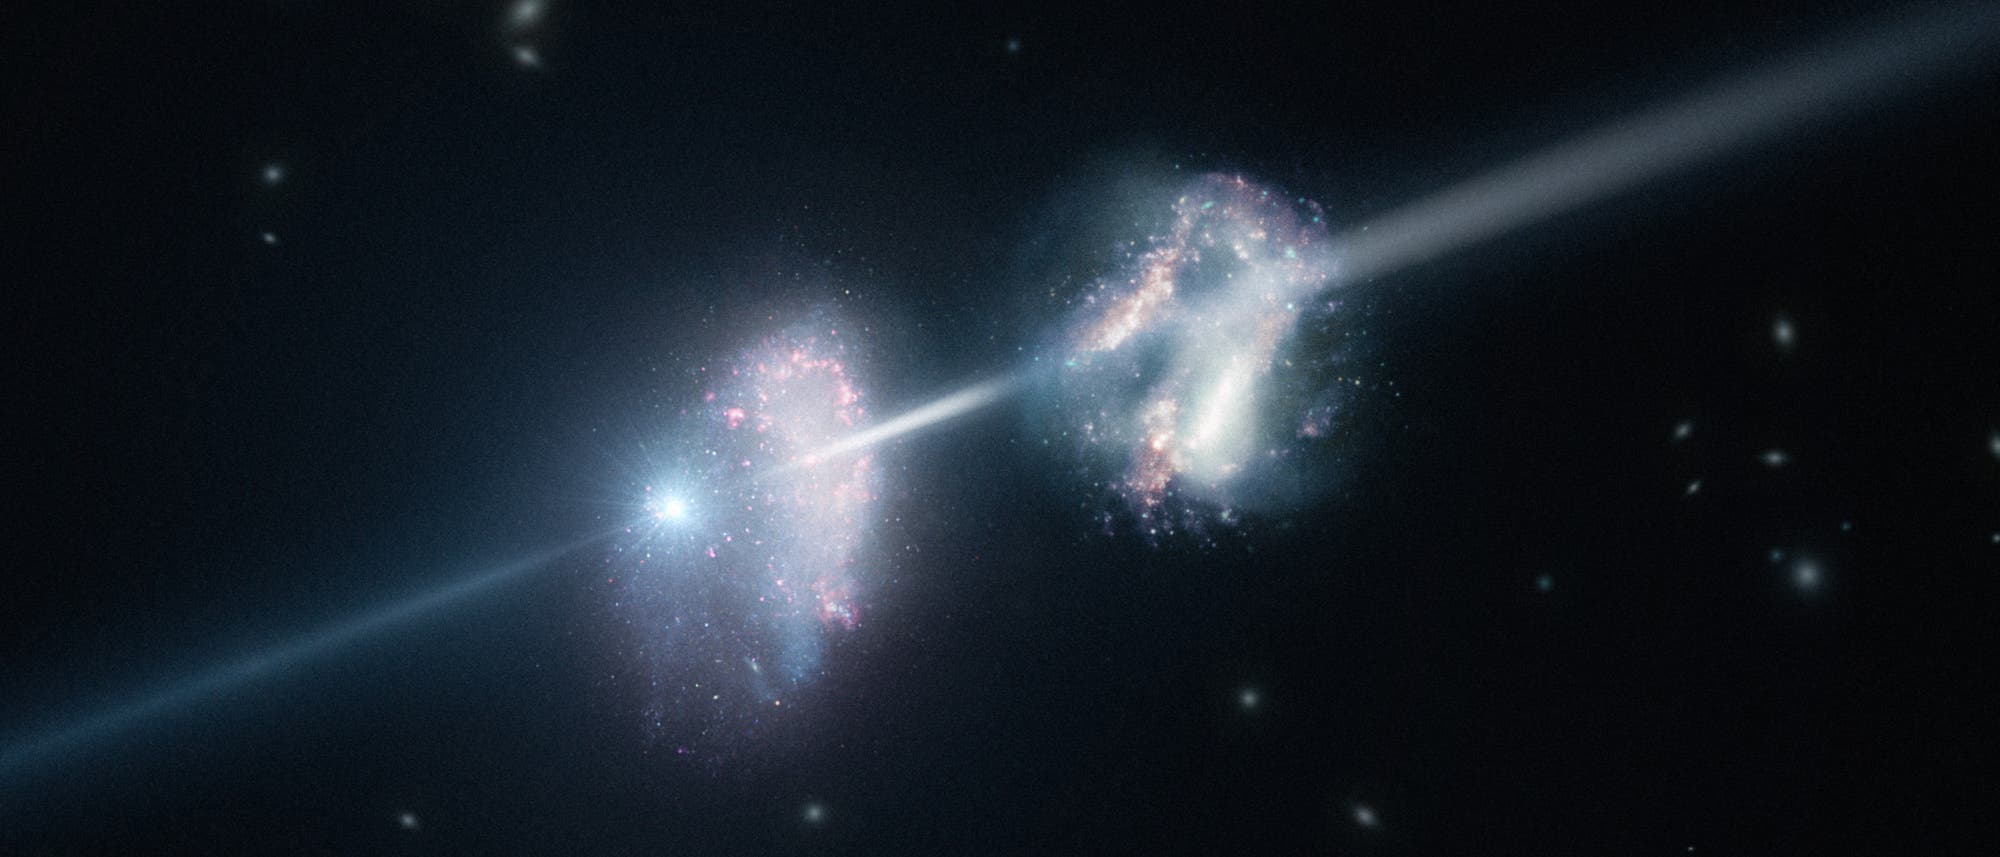 Künstlerische Darstellung der beiden vom Gammastrahlenausbruch durchleuchteten Galaxien.